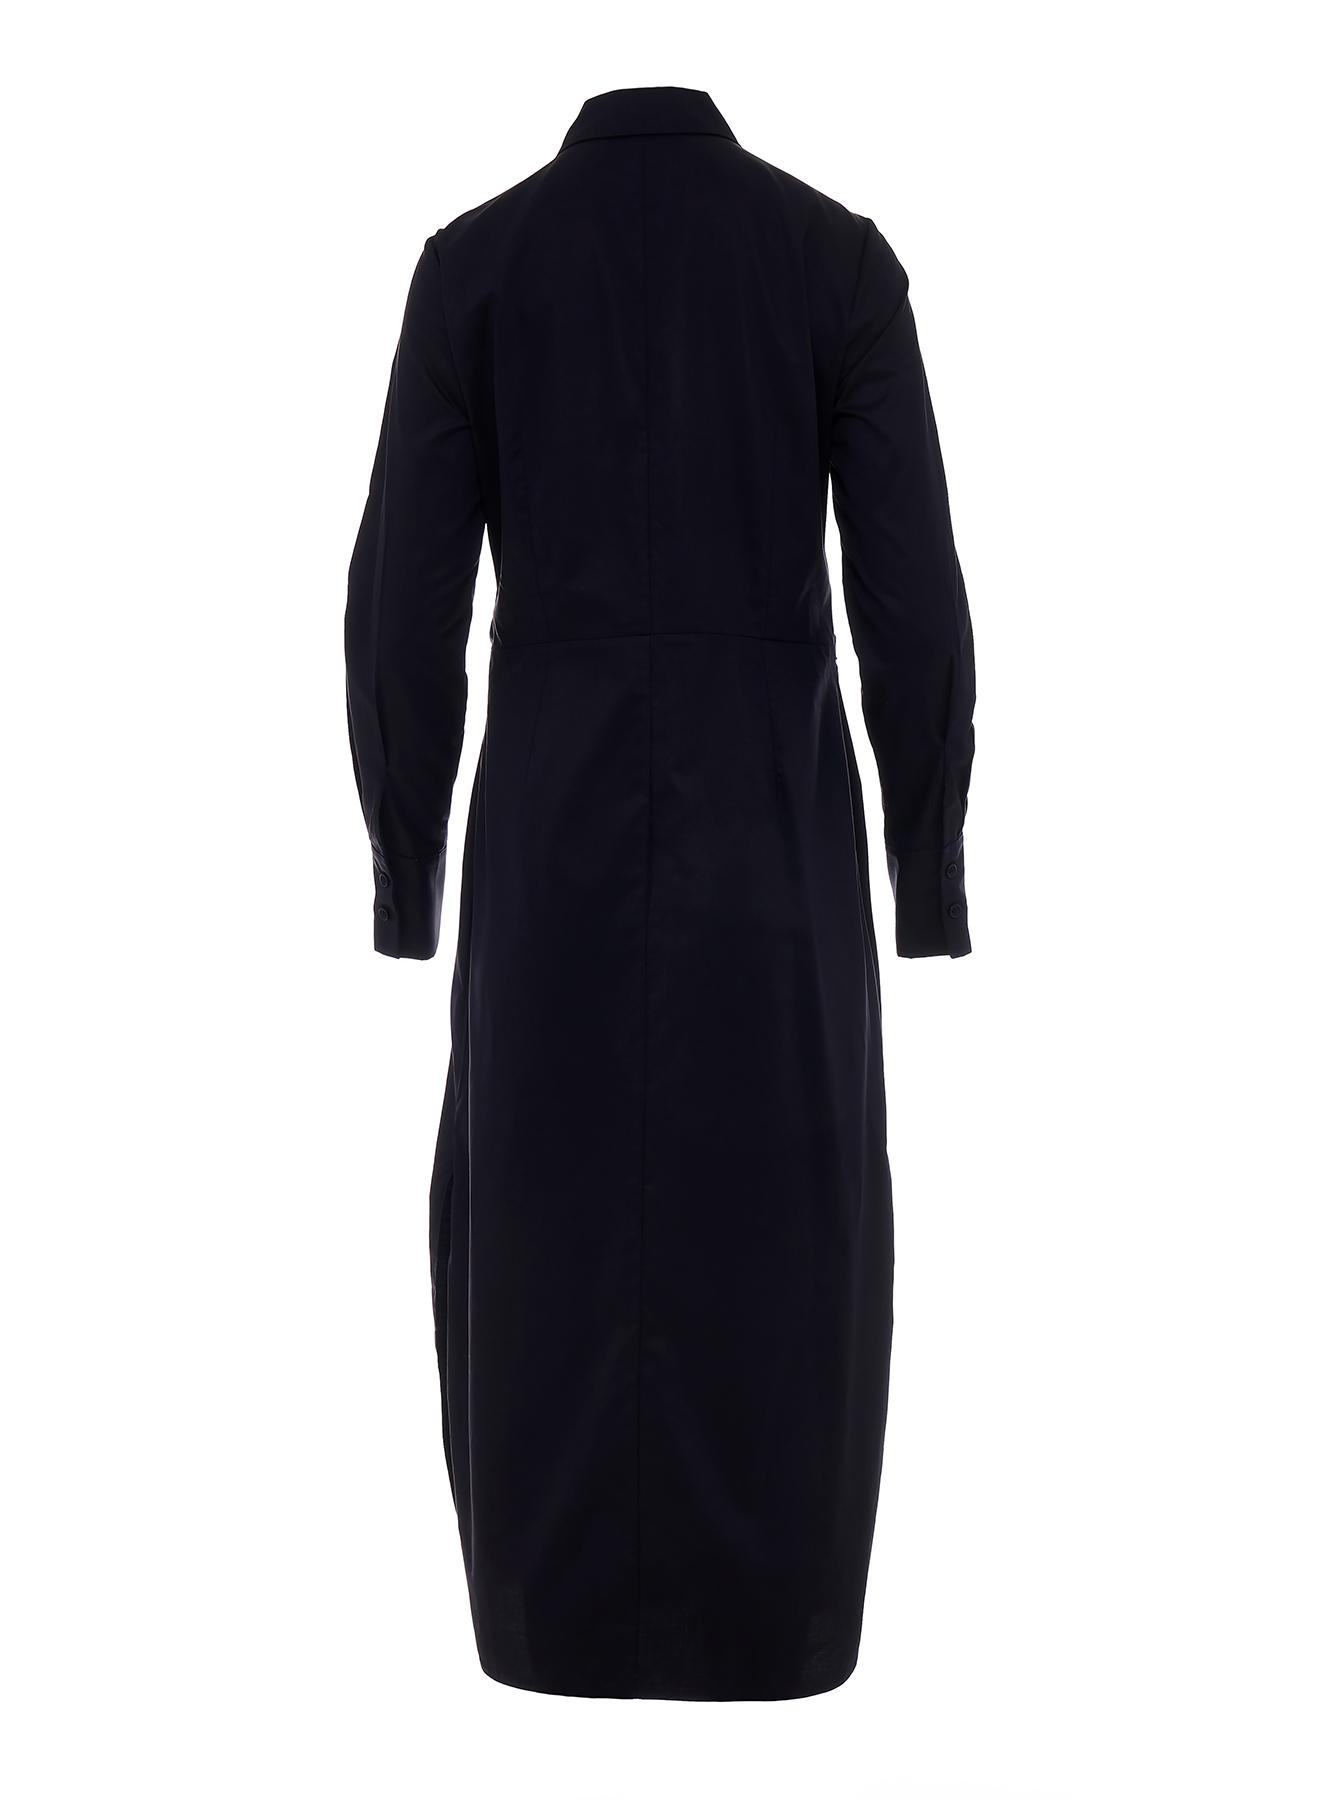 Μαύρο μακρύ σεμιζιέ Φόρεμα ποπλίνα με ζώνη "LILIBET" Devotion Twins - 2